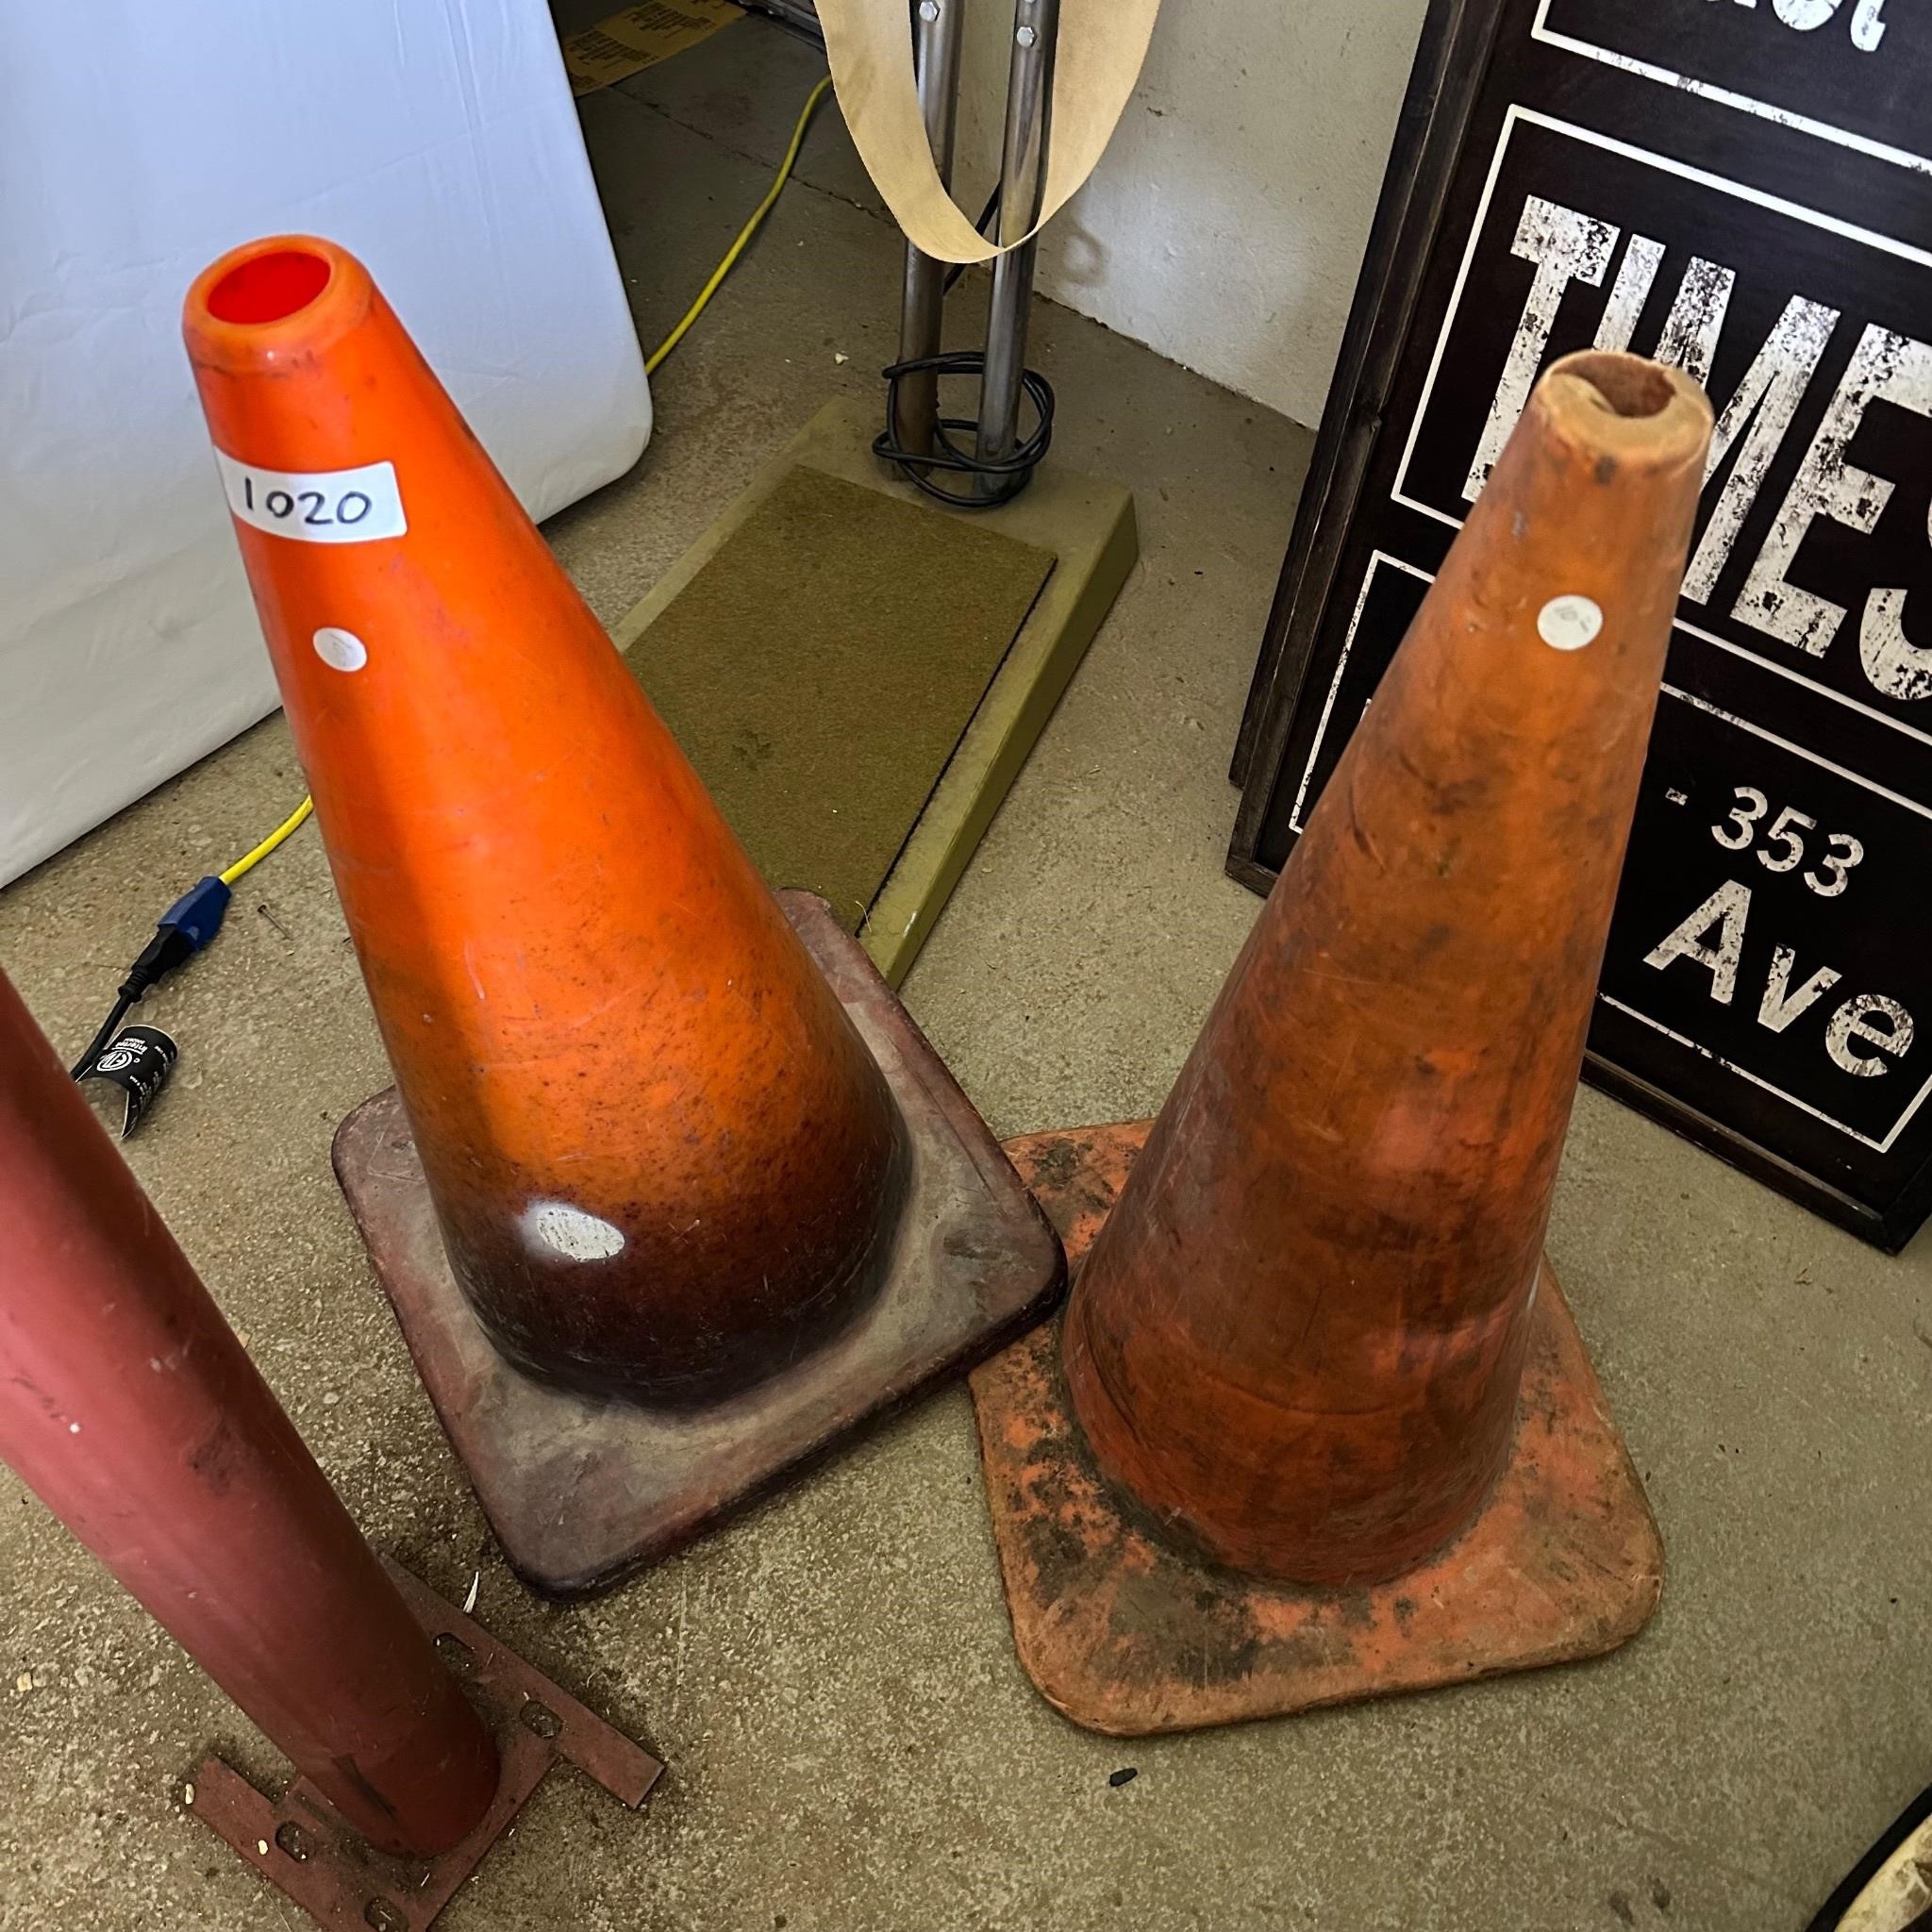 Pair of Orange Cones